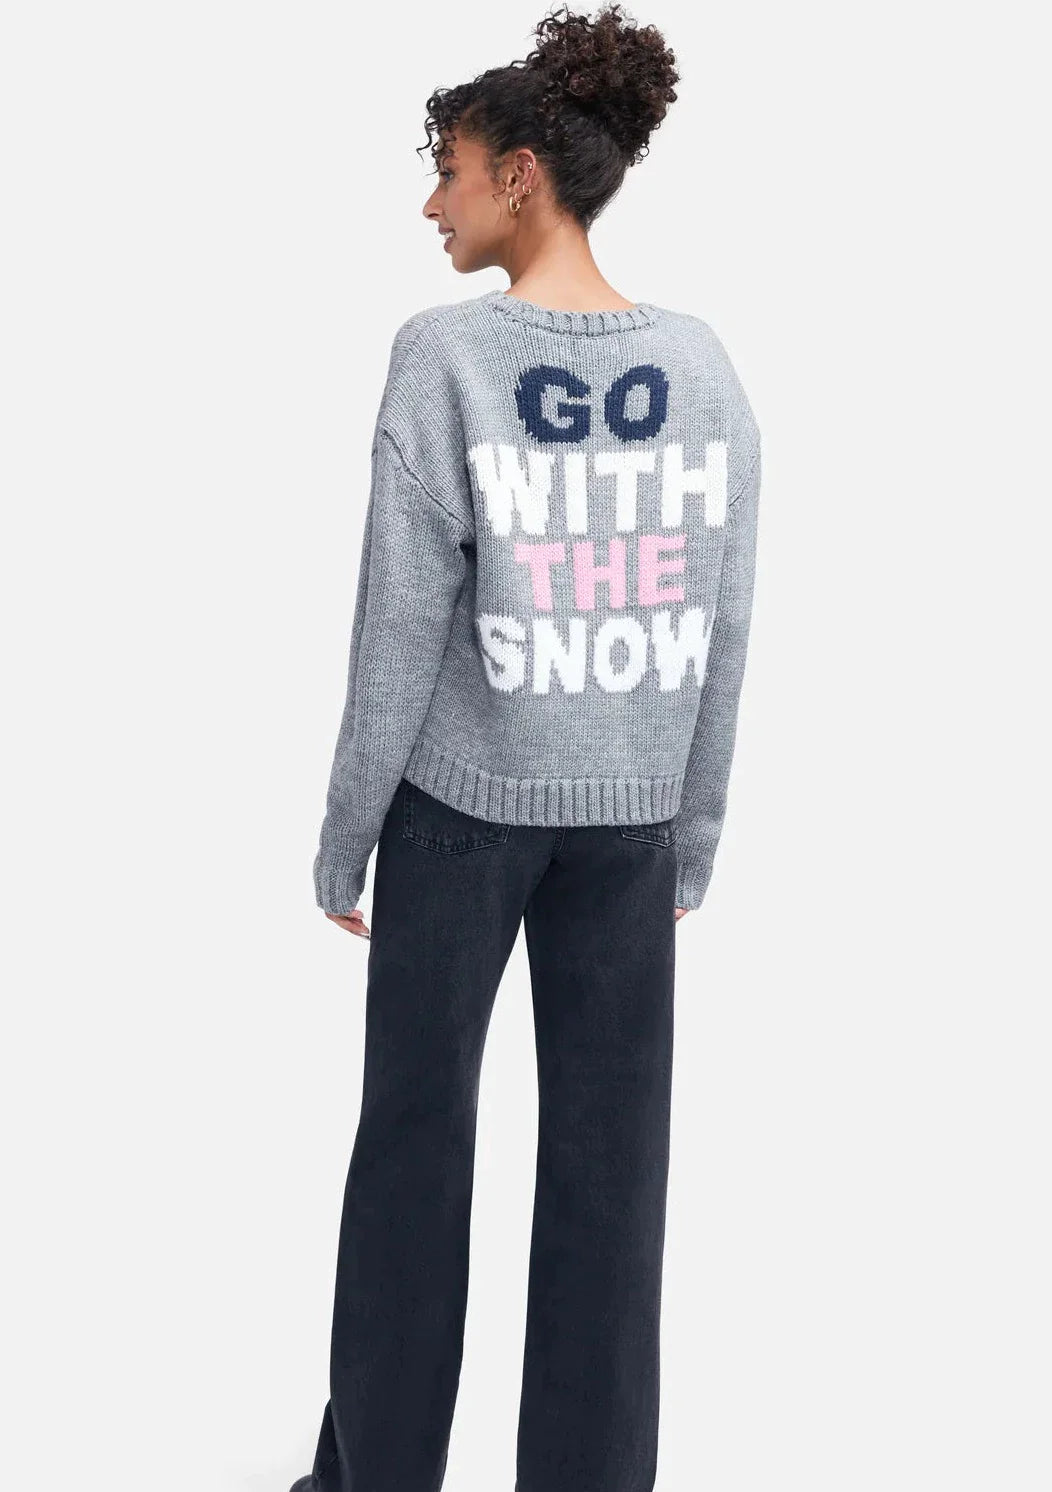 WILDFOX “Go With Snow” Sweater - Heather Grey